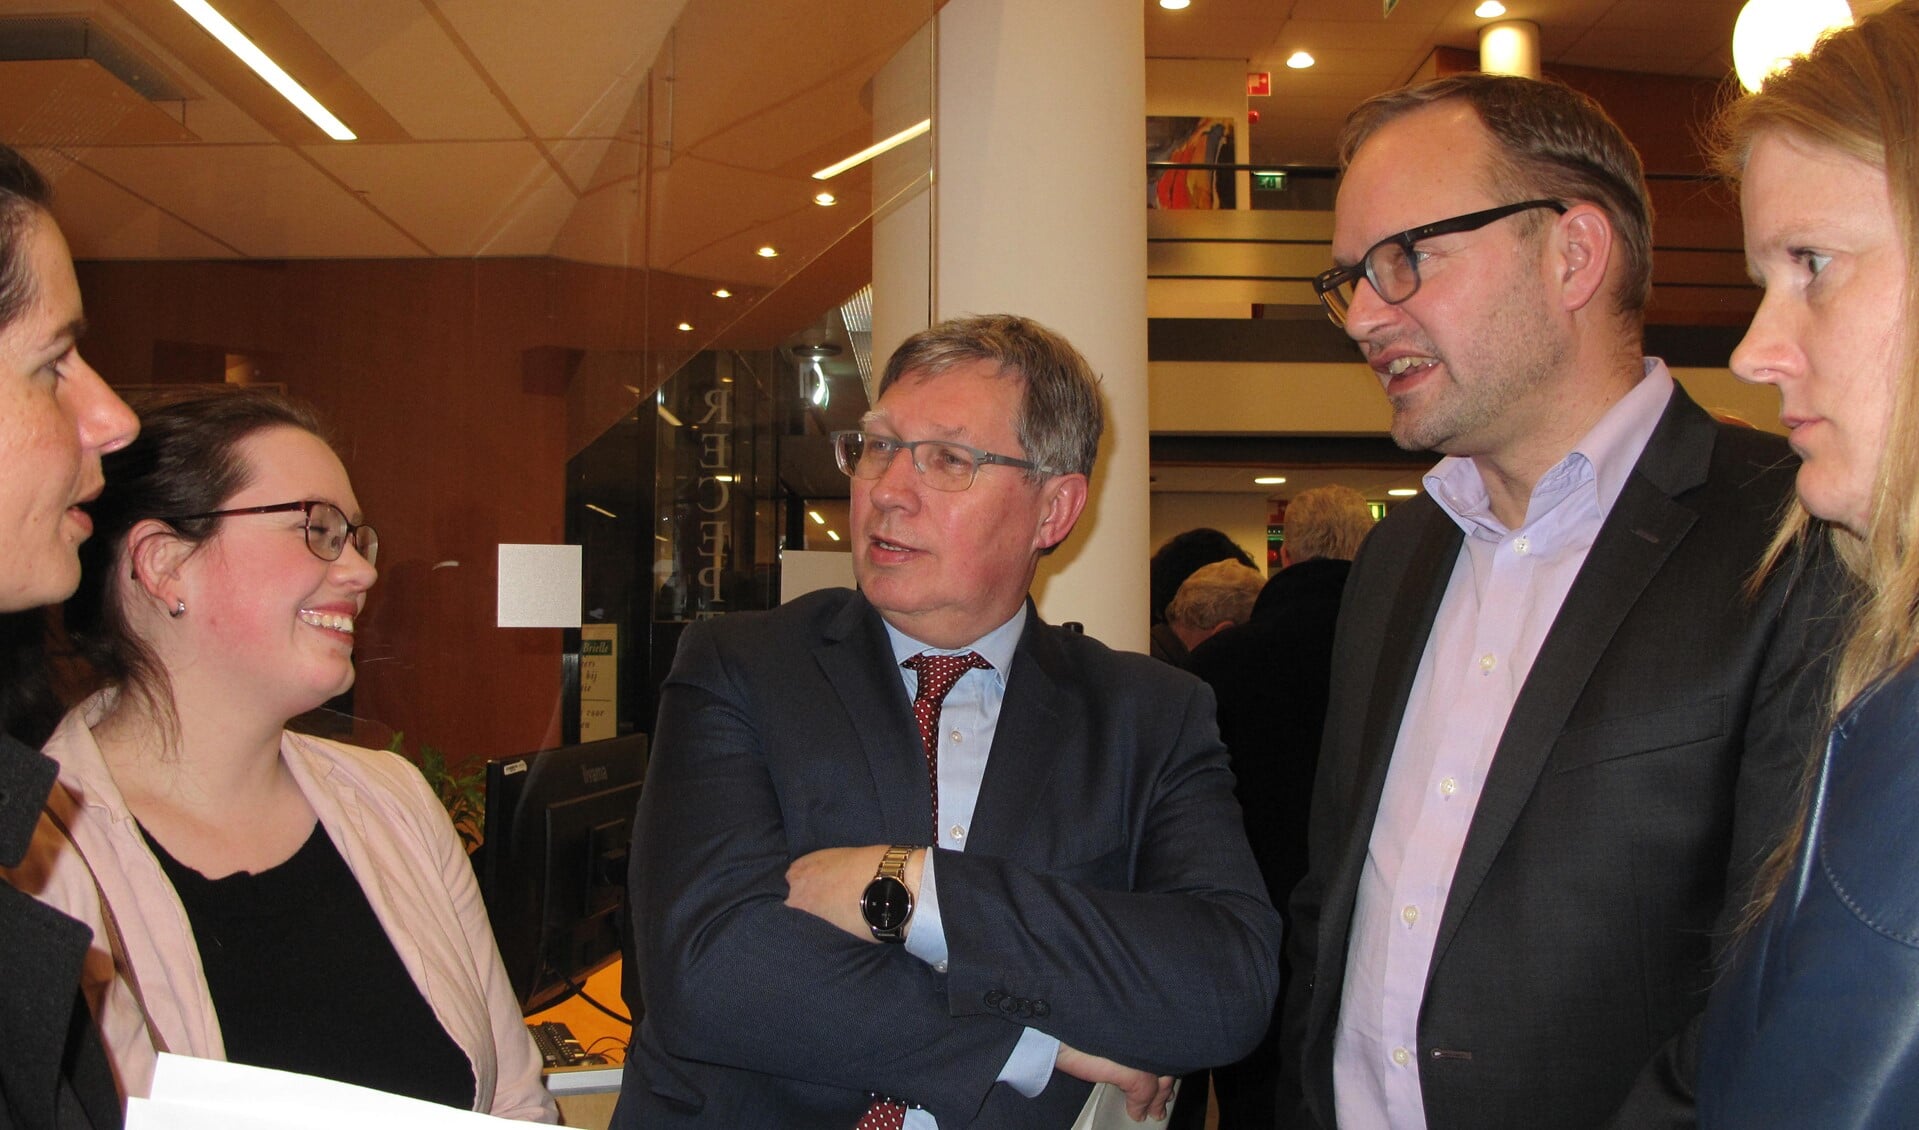 Burgemeester Gregor Rensen met rechts van hem  huidig 1e loco-burgemeester Robert van der Kooi (IBGB) op de avond van de verkiezingen (archieffoto)